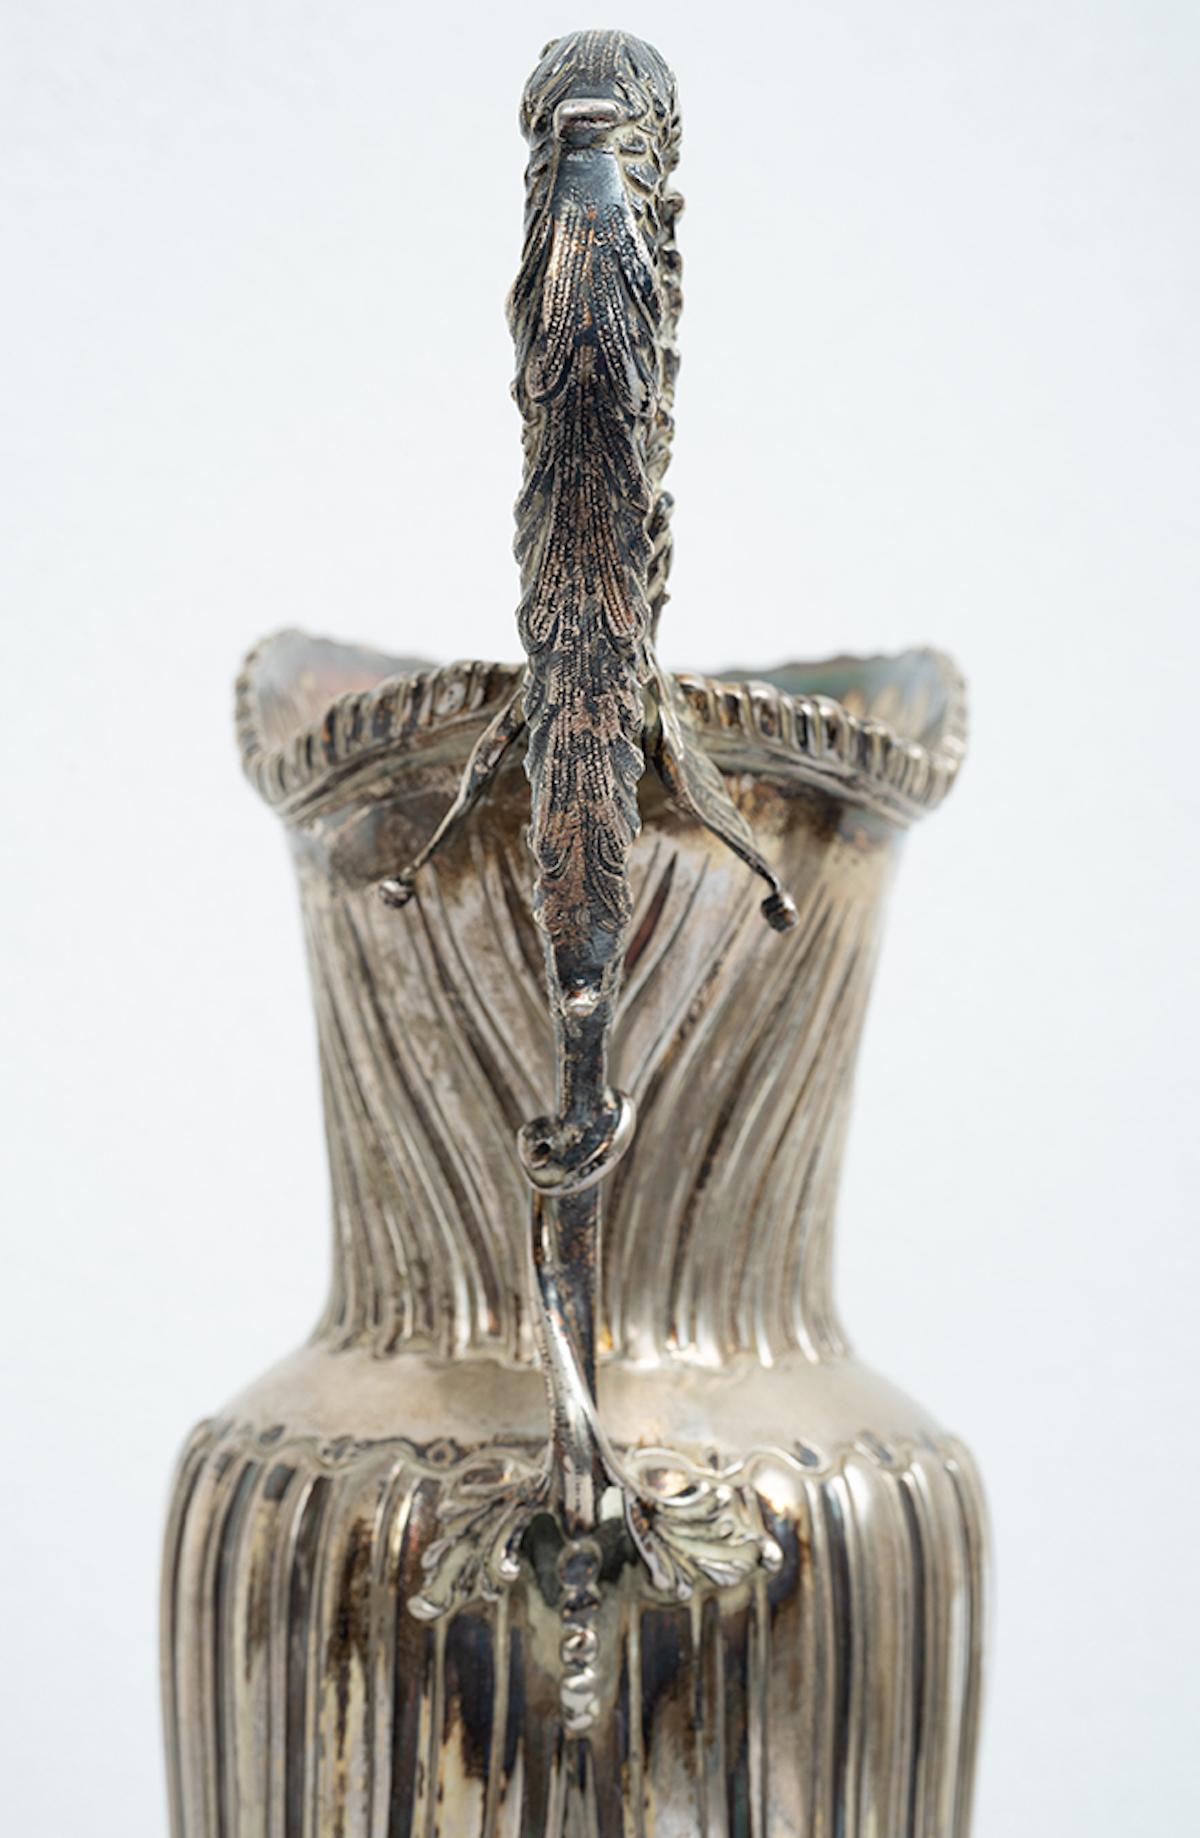 Antiker neapolitanischer Silberausgießer aus dem frühen 20. Jahrhundert.

Der sinusförmige Mittelteil ist mit einer Schale verziert, die von einem Griff in Form eines geflügelten Delphins durchsetzt ist.

Der Sockel hat eine ovale Form und ist am